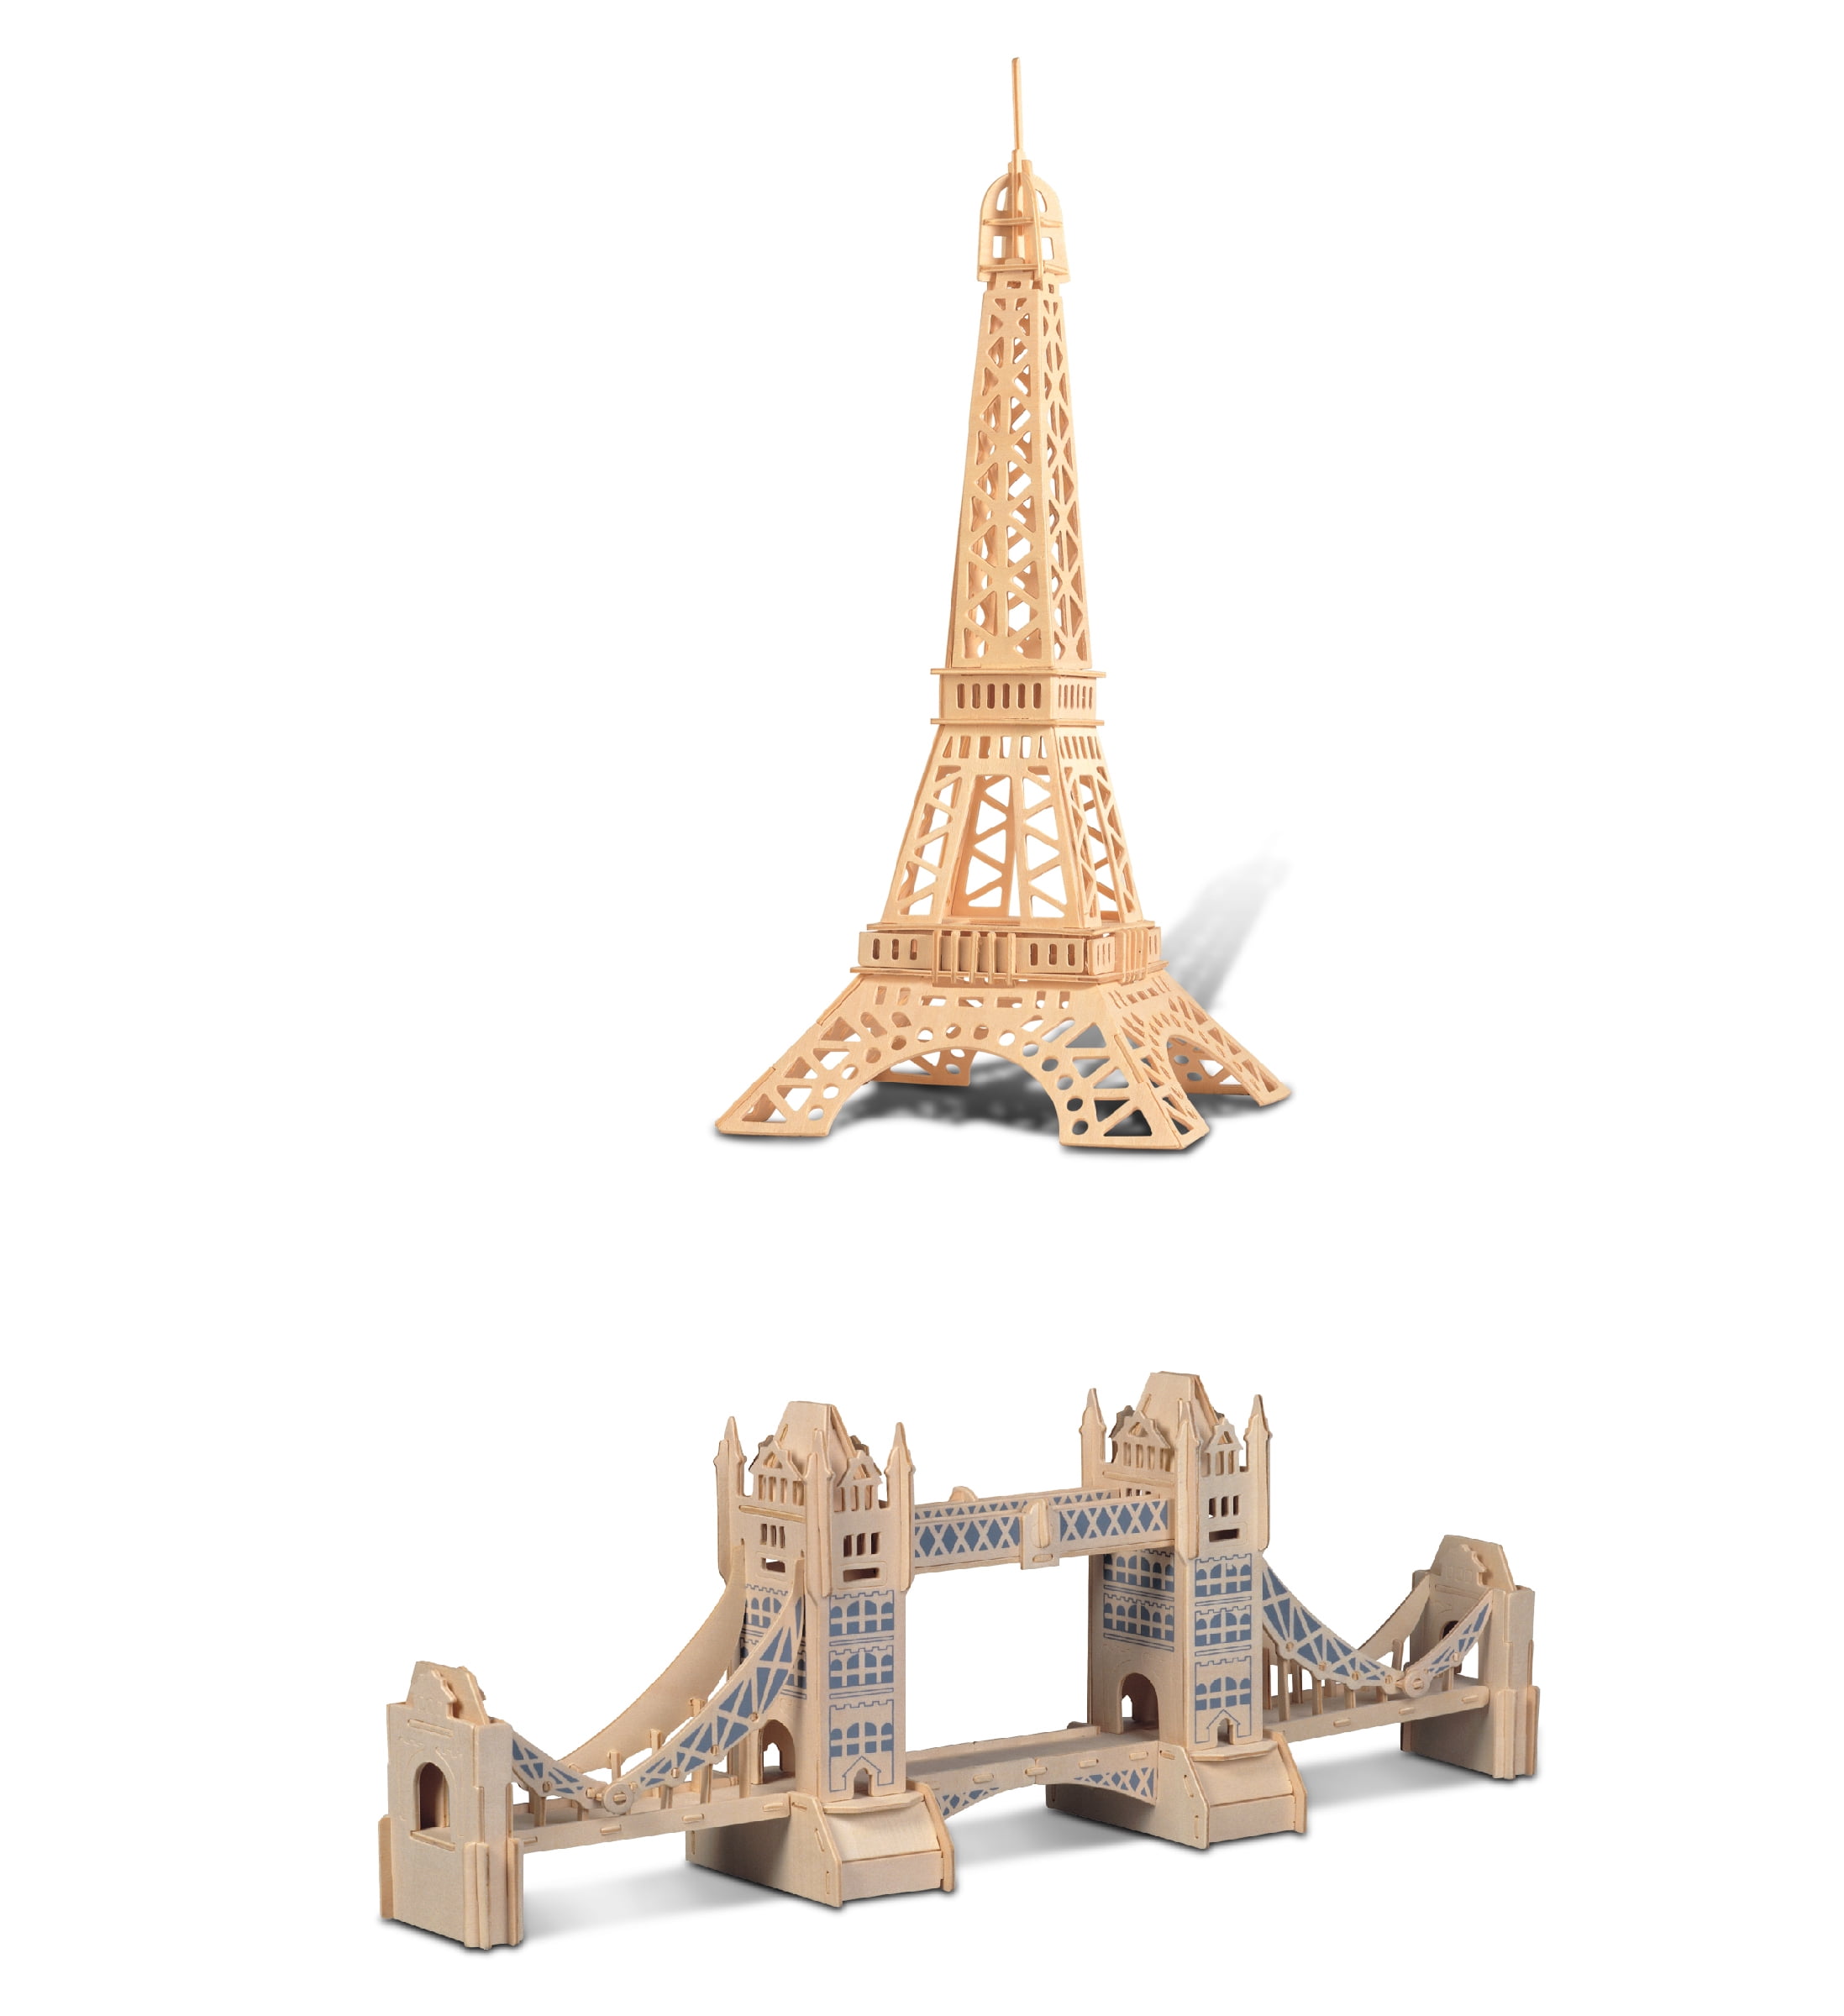 Gold 3D Metal Puzzle Model Kits Assemble Jigsaw Toys Arc De Triomphe 